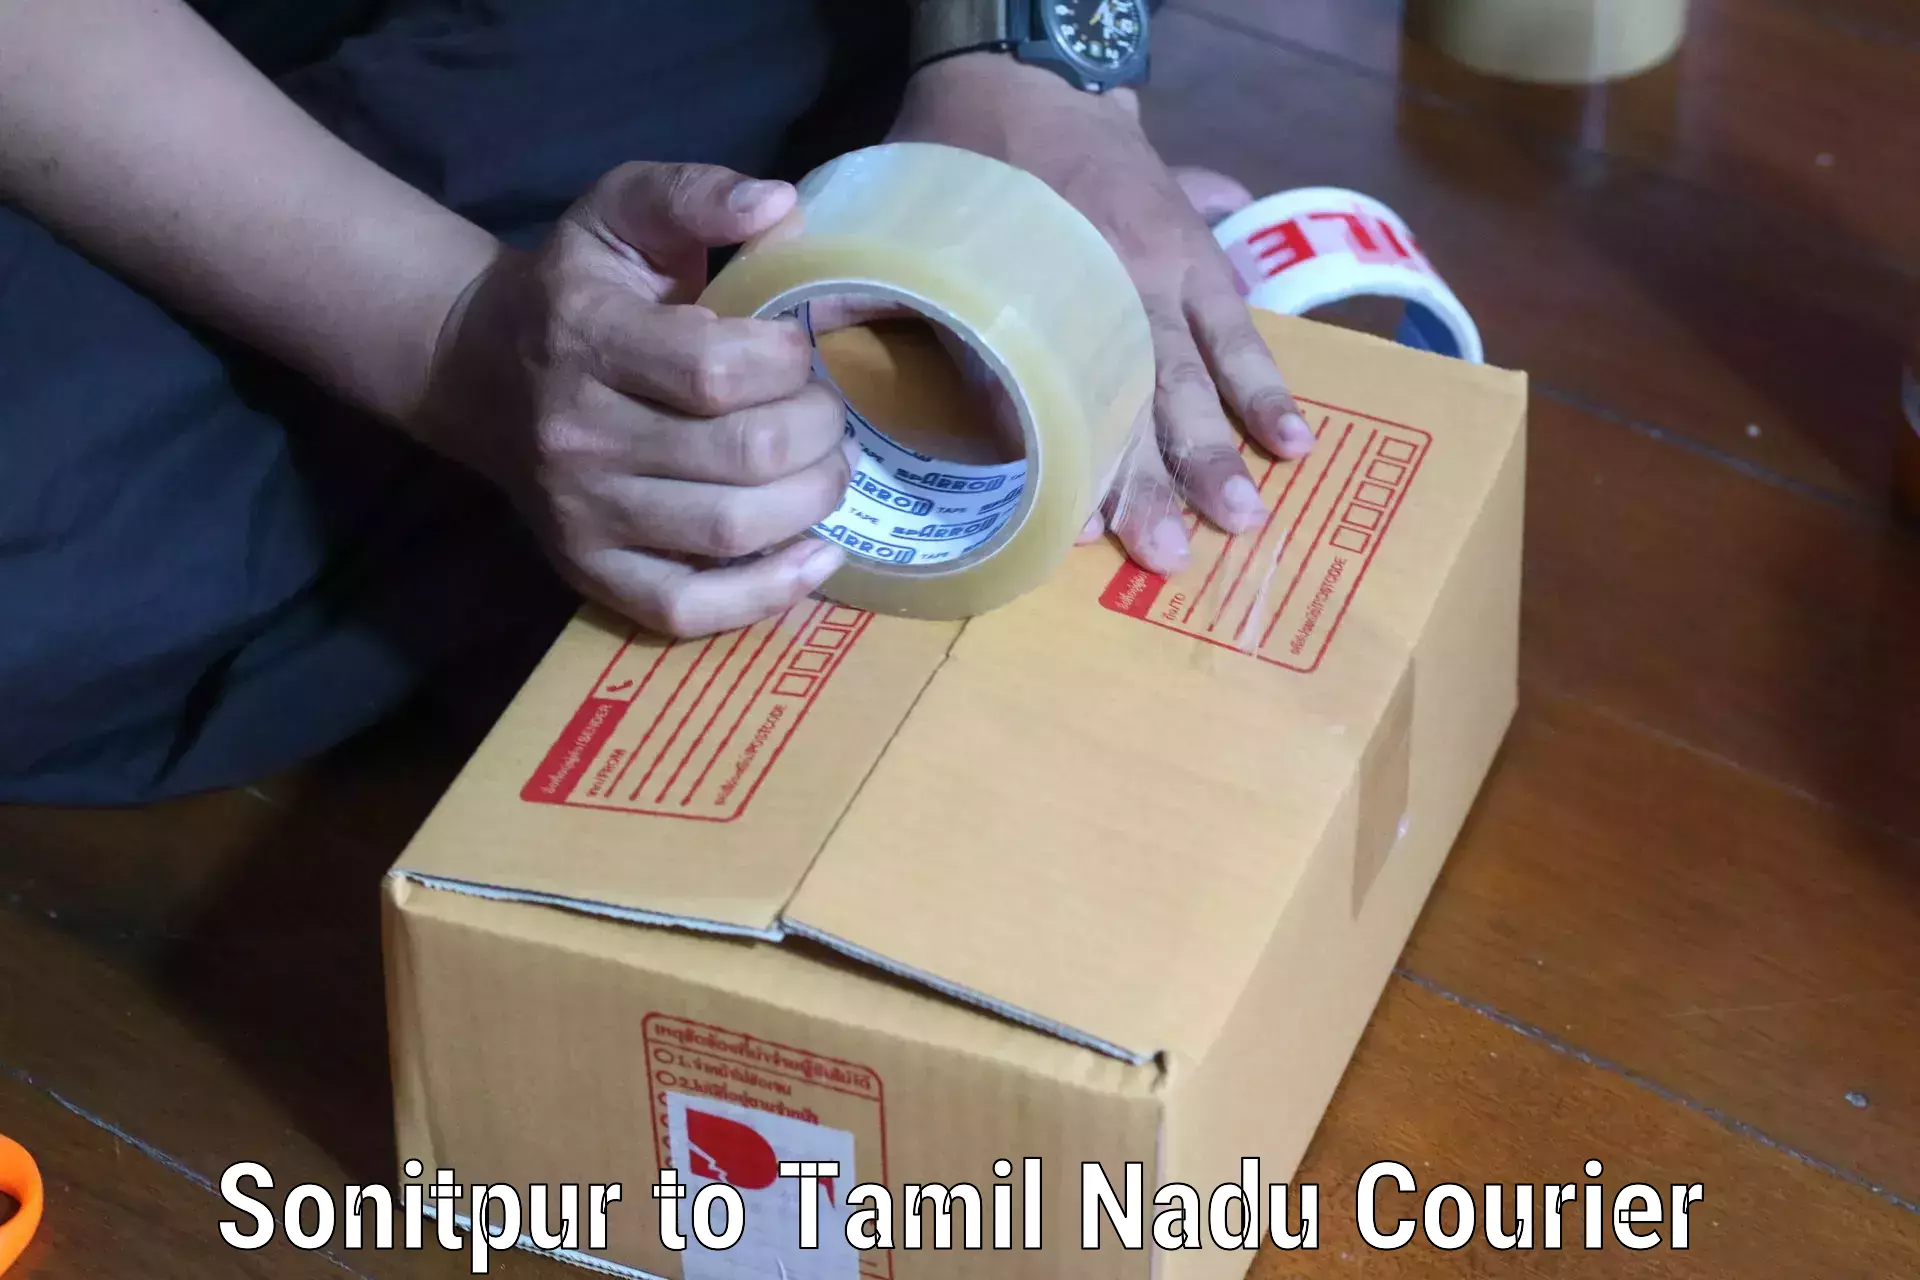 Reliable courier service Sonitpur to Denkanikottai